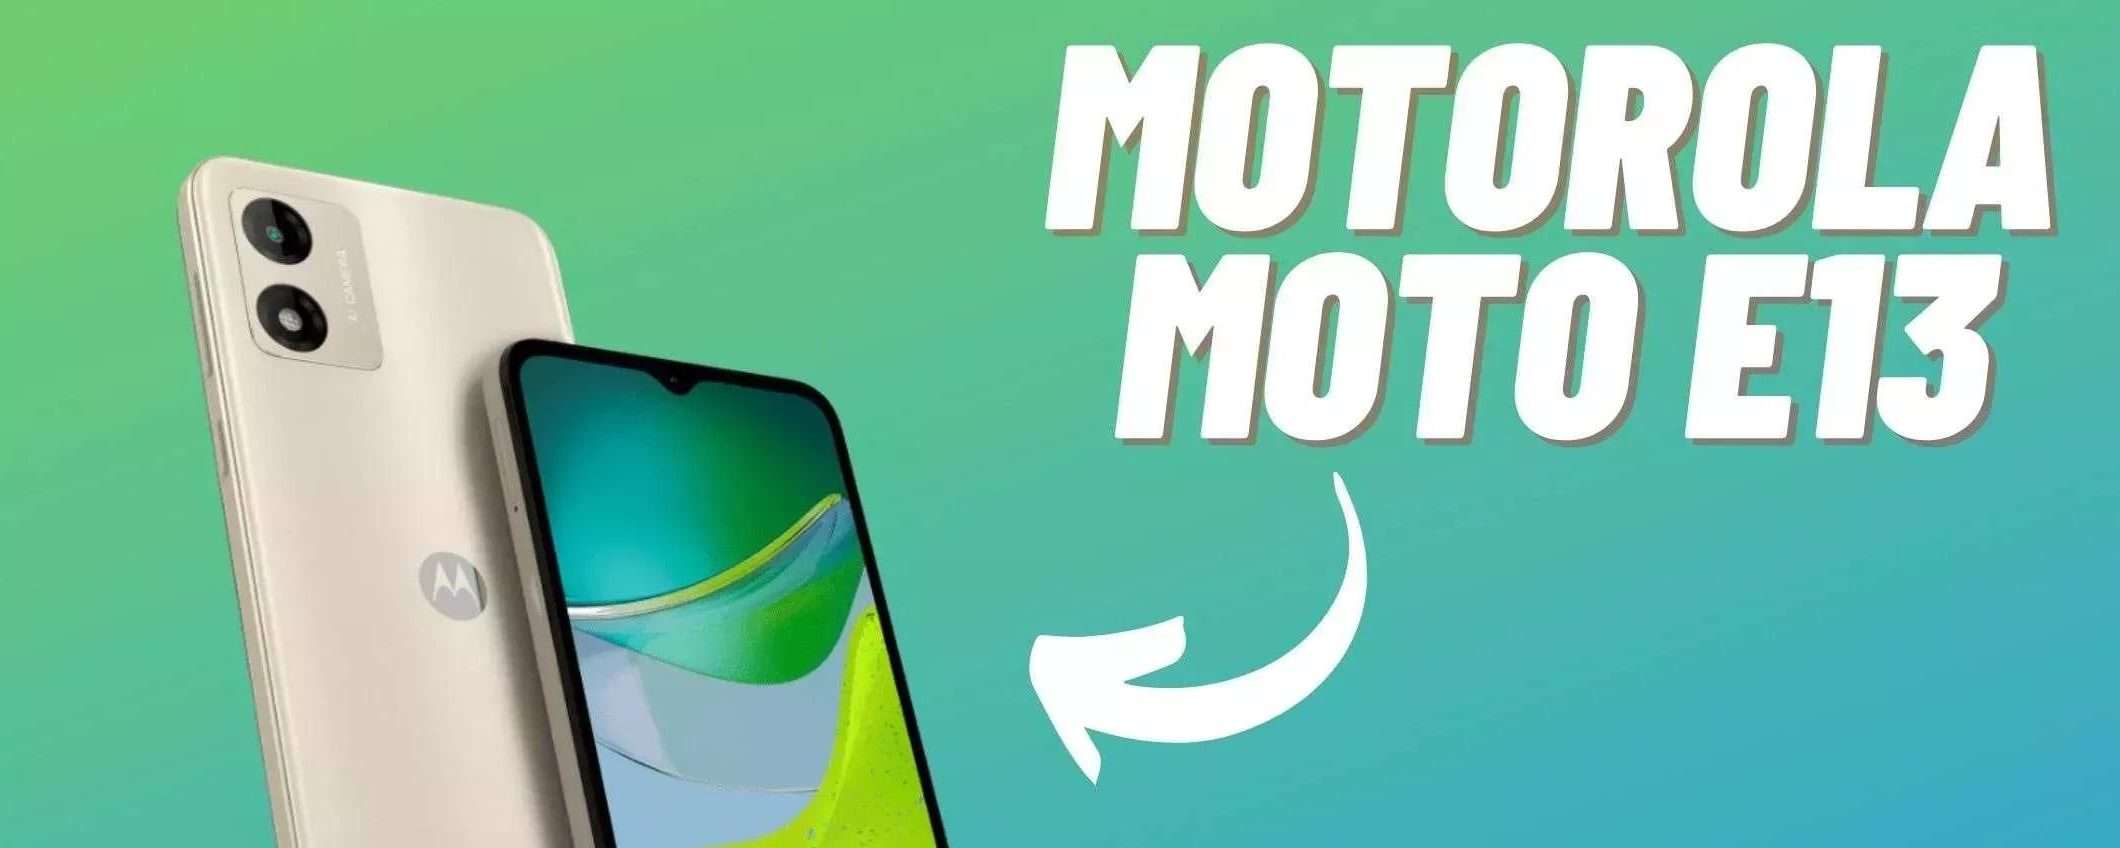 Uno smartphone a meno di 80€ su Amazon? Sì, è il Motorola Moto E13